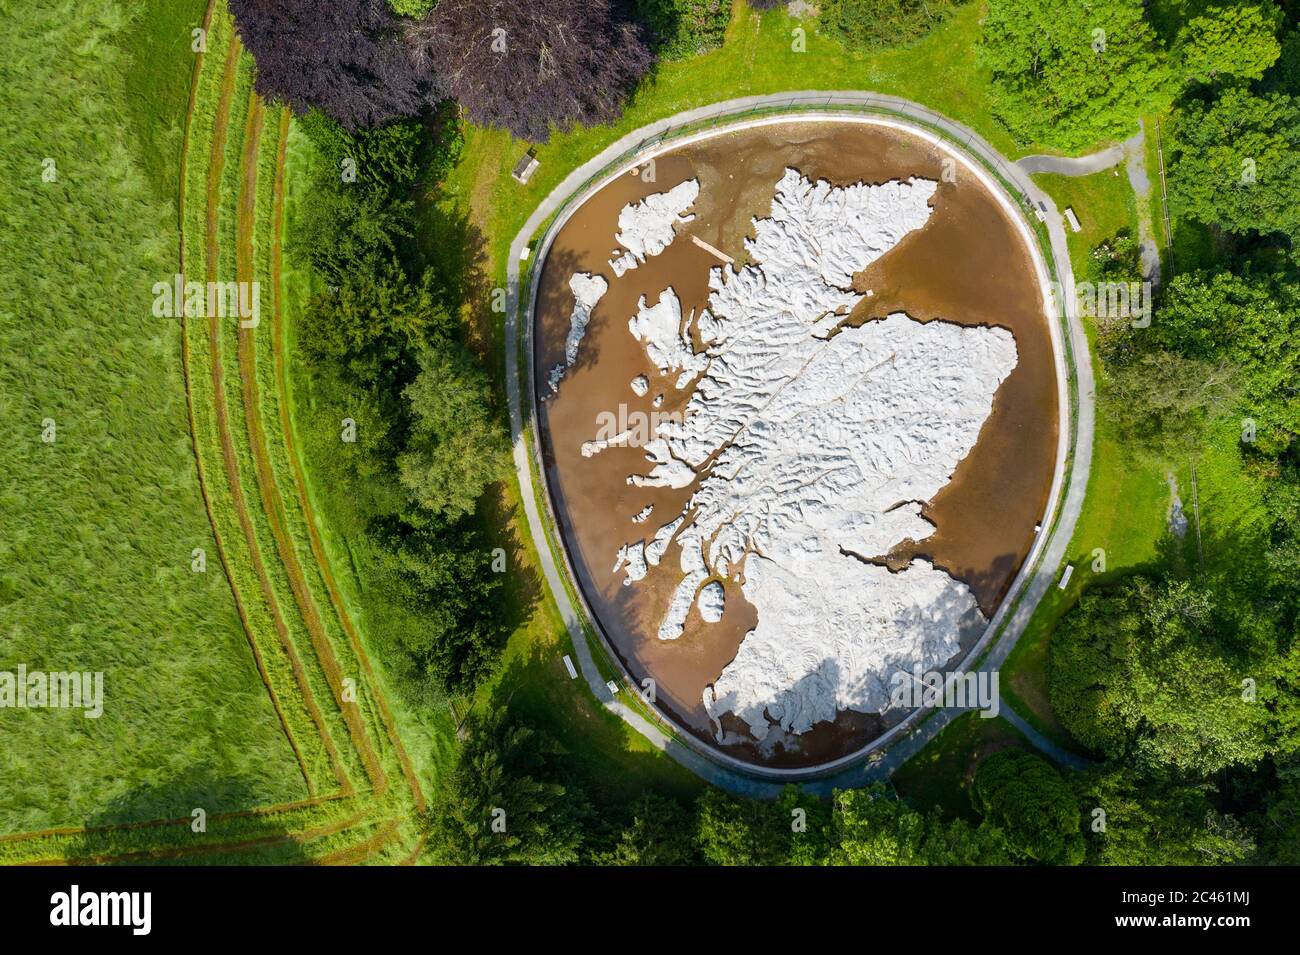 Eddleston, Schottland, Großbritannien. Juni 2020. 24 Eine Luftaufnahme der Great Polish Map of Scotland, als spiegelte sie die sonnigen, wolkenfreien Bedingungen, die Schottland heute genießt. Die Karte ist ein dreidimensionales Modell im Massstab aus Beton im Außenmaßstab von 40 m x 50 m, das sich im Barony Castle Hotel in Eddleston bei Peebles befindet. Es wurde von dem polnischen Kriegsveteranen Jan Tomasik zwischen 1974 und 1979 gebaut und gilt als das weltweit größte Geländetelief-Modell. Die Skulptur ist ein denkmalgeschütztes Gebäude der Kategorie B. Iain Masterton/Alamy Live News Stockfoto